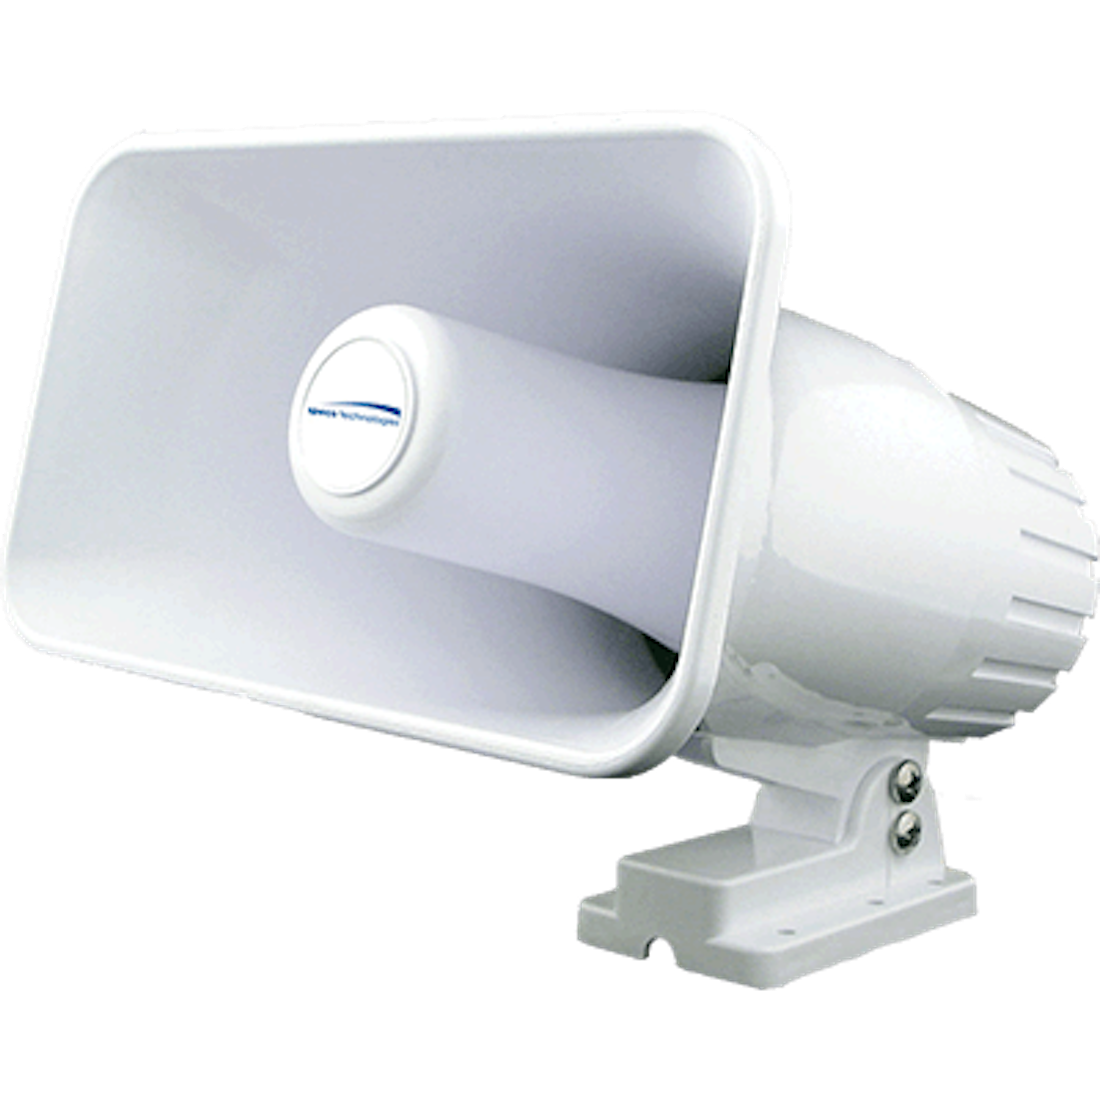 Speco 4" x 6" Weatherproof PA Speaker Horn - White [SPC12RP]